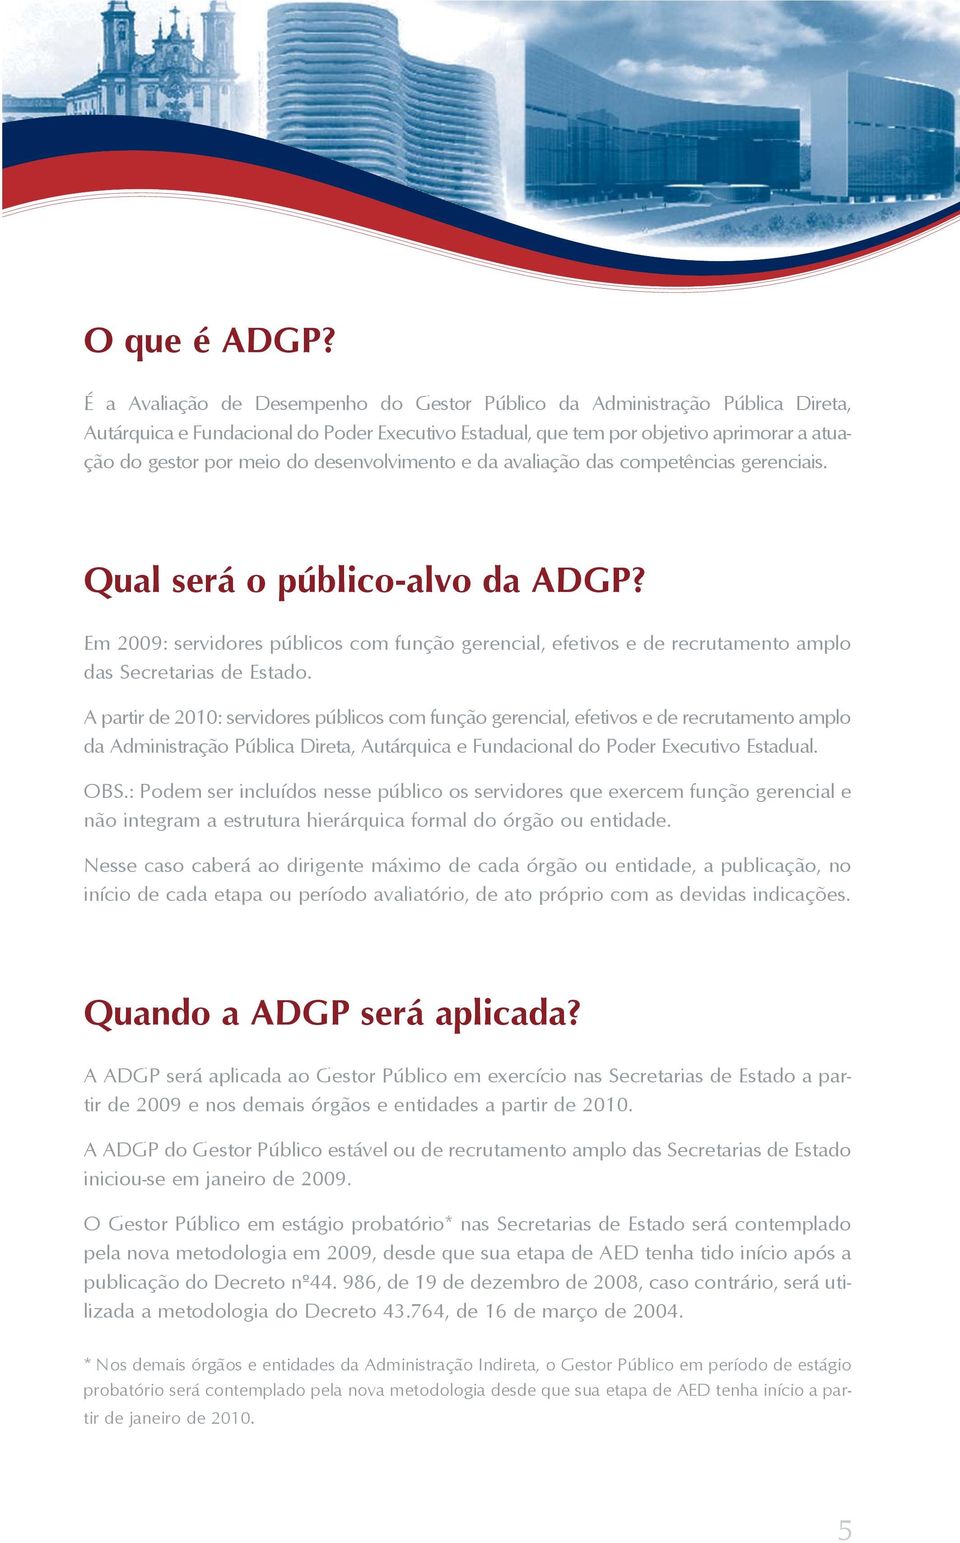 desenvolvimento e da avaliação das competências gerenciais. Qual será o público-alvo da ADGP?